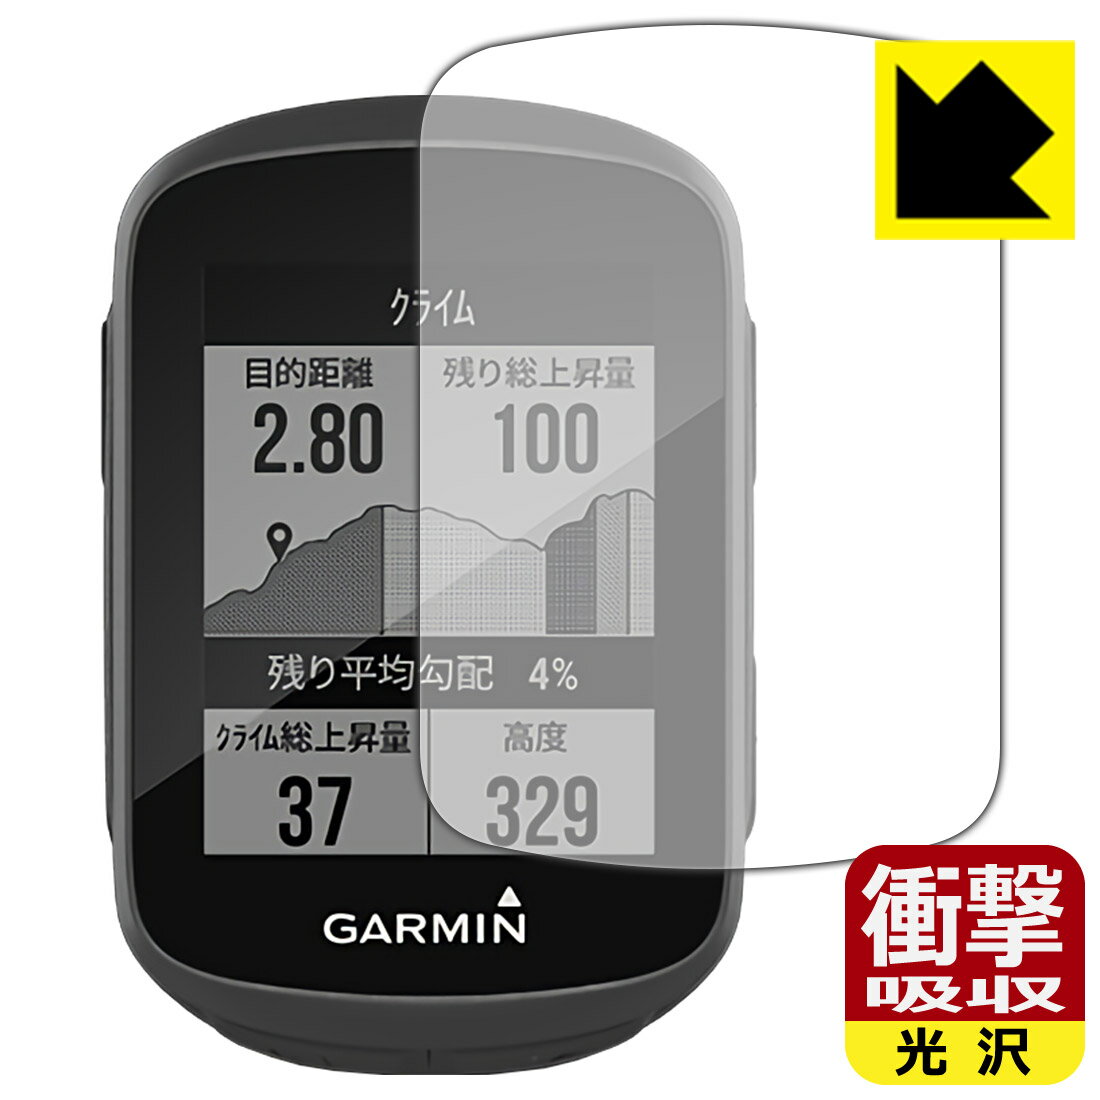 衝撃吸収【光沢】保護フィルム ガーミン GARMIN Edge 130 / 130 Plus 日本製 自社製造直販